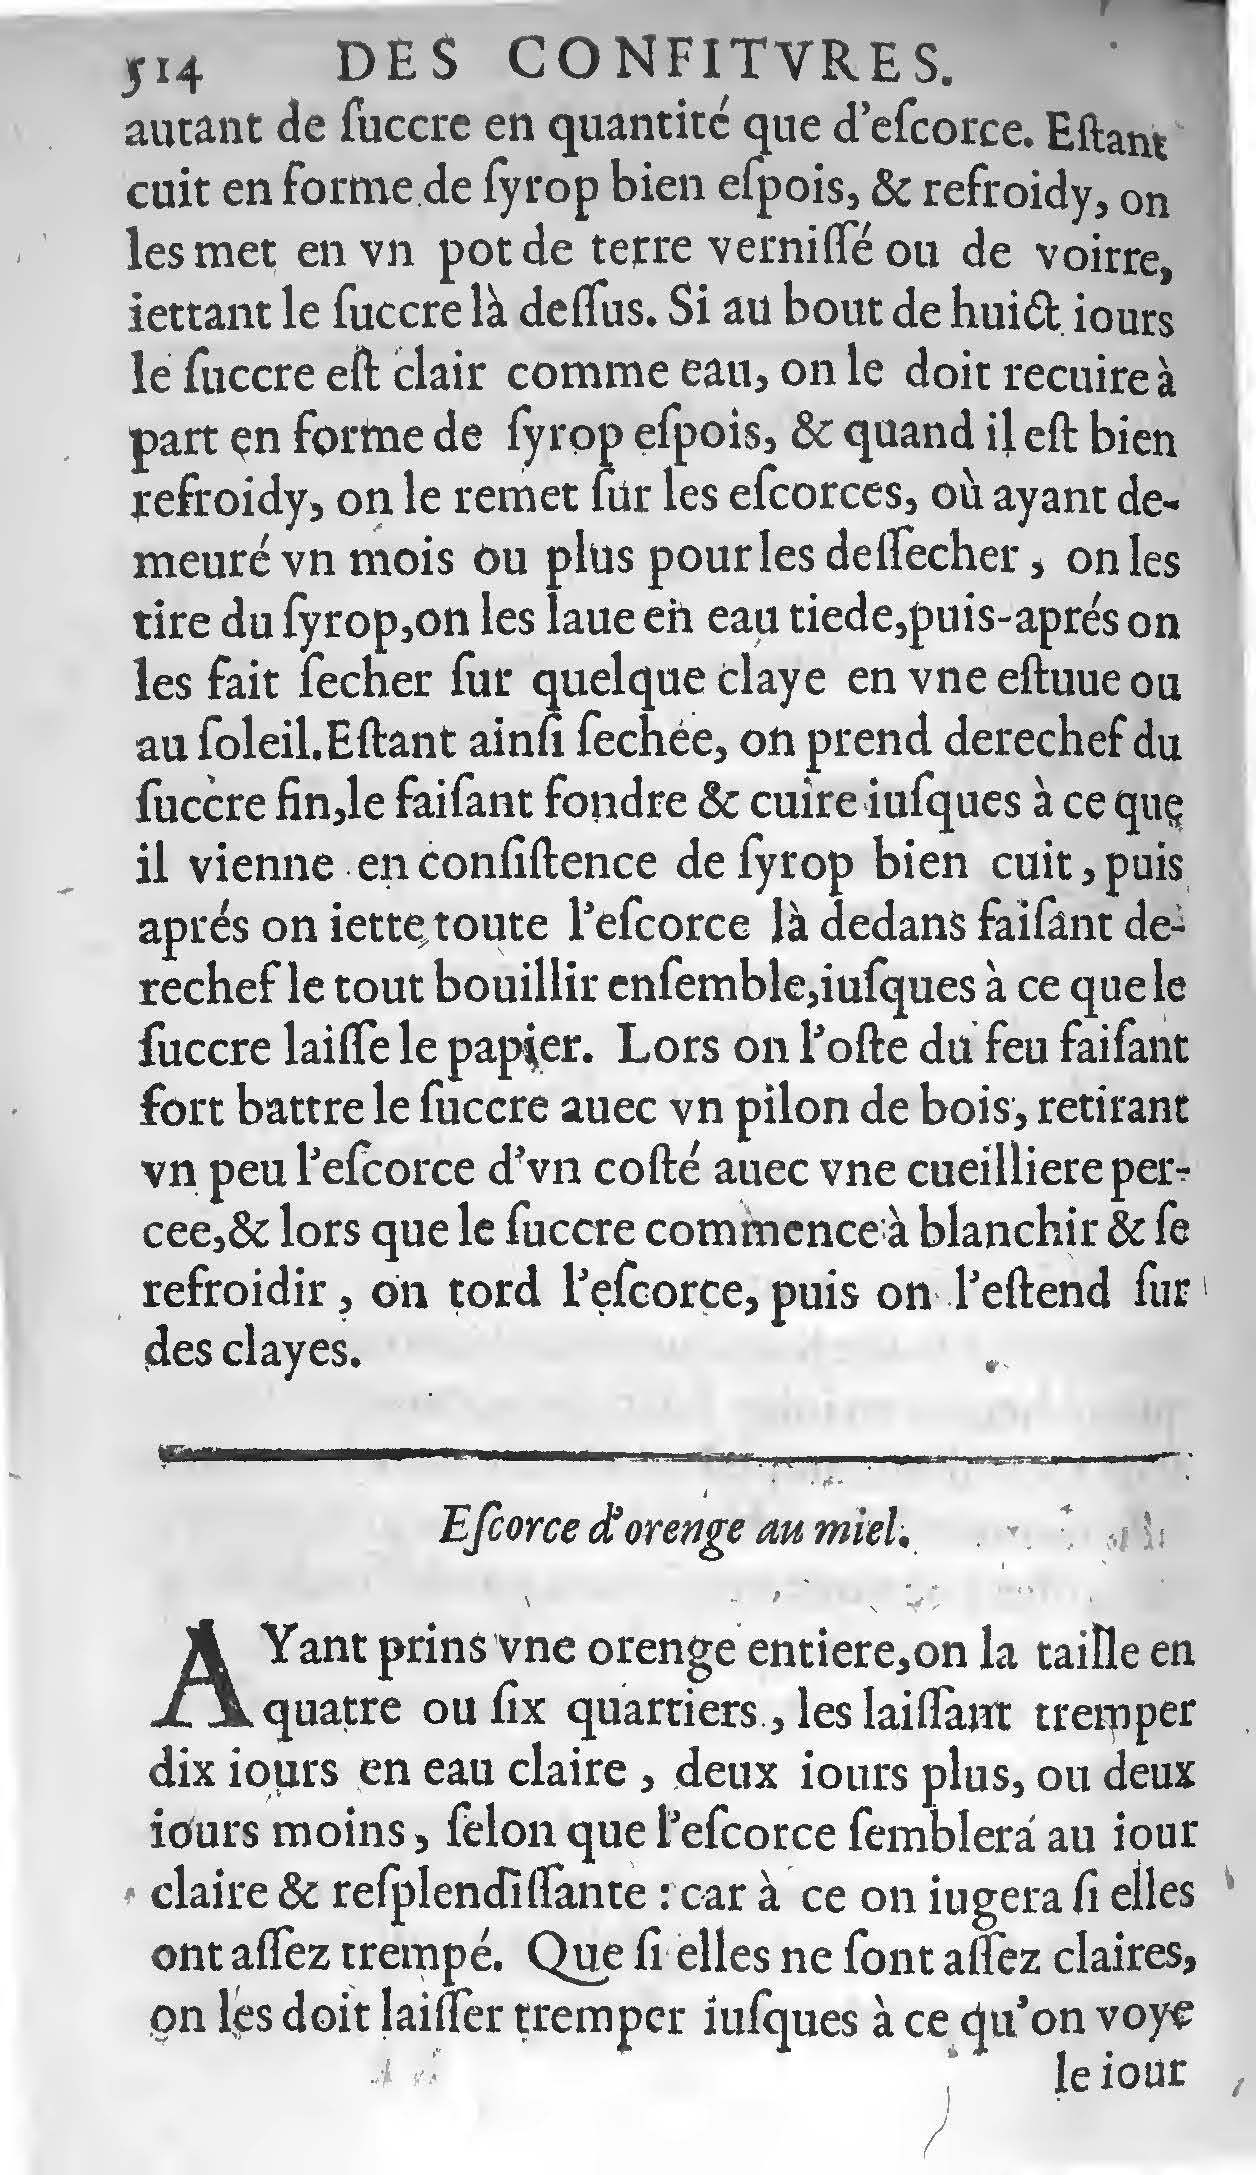 1607 Étienne Servain et Jean Antoine Huguetan - Trésor de santé ou ménage de la vie humaine - BIU Santé_Page_534.jpg